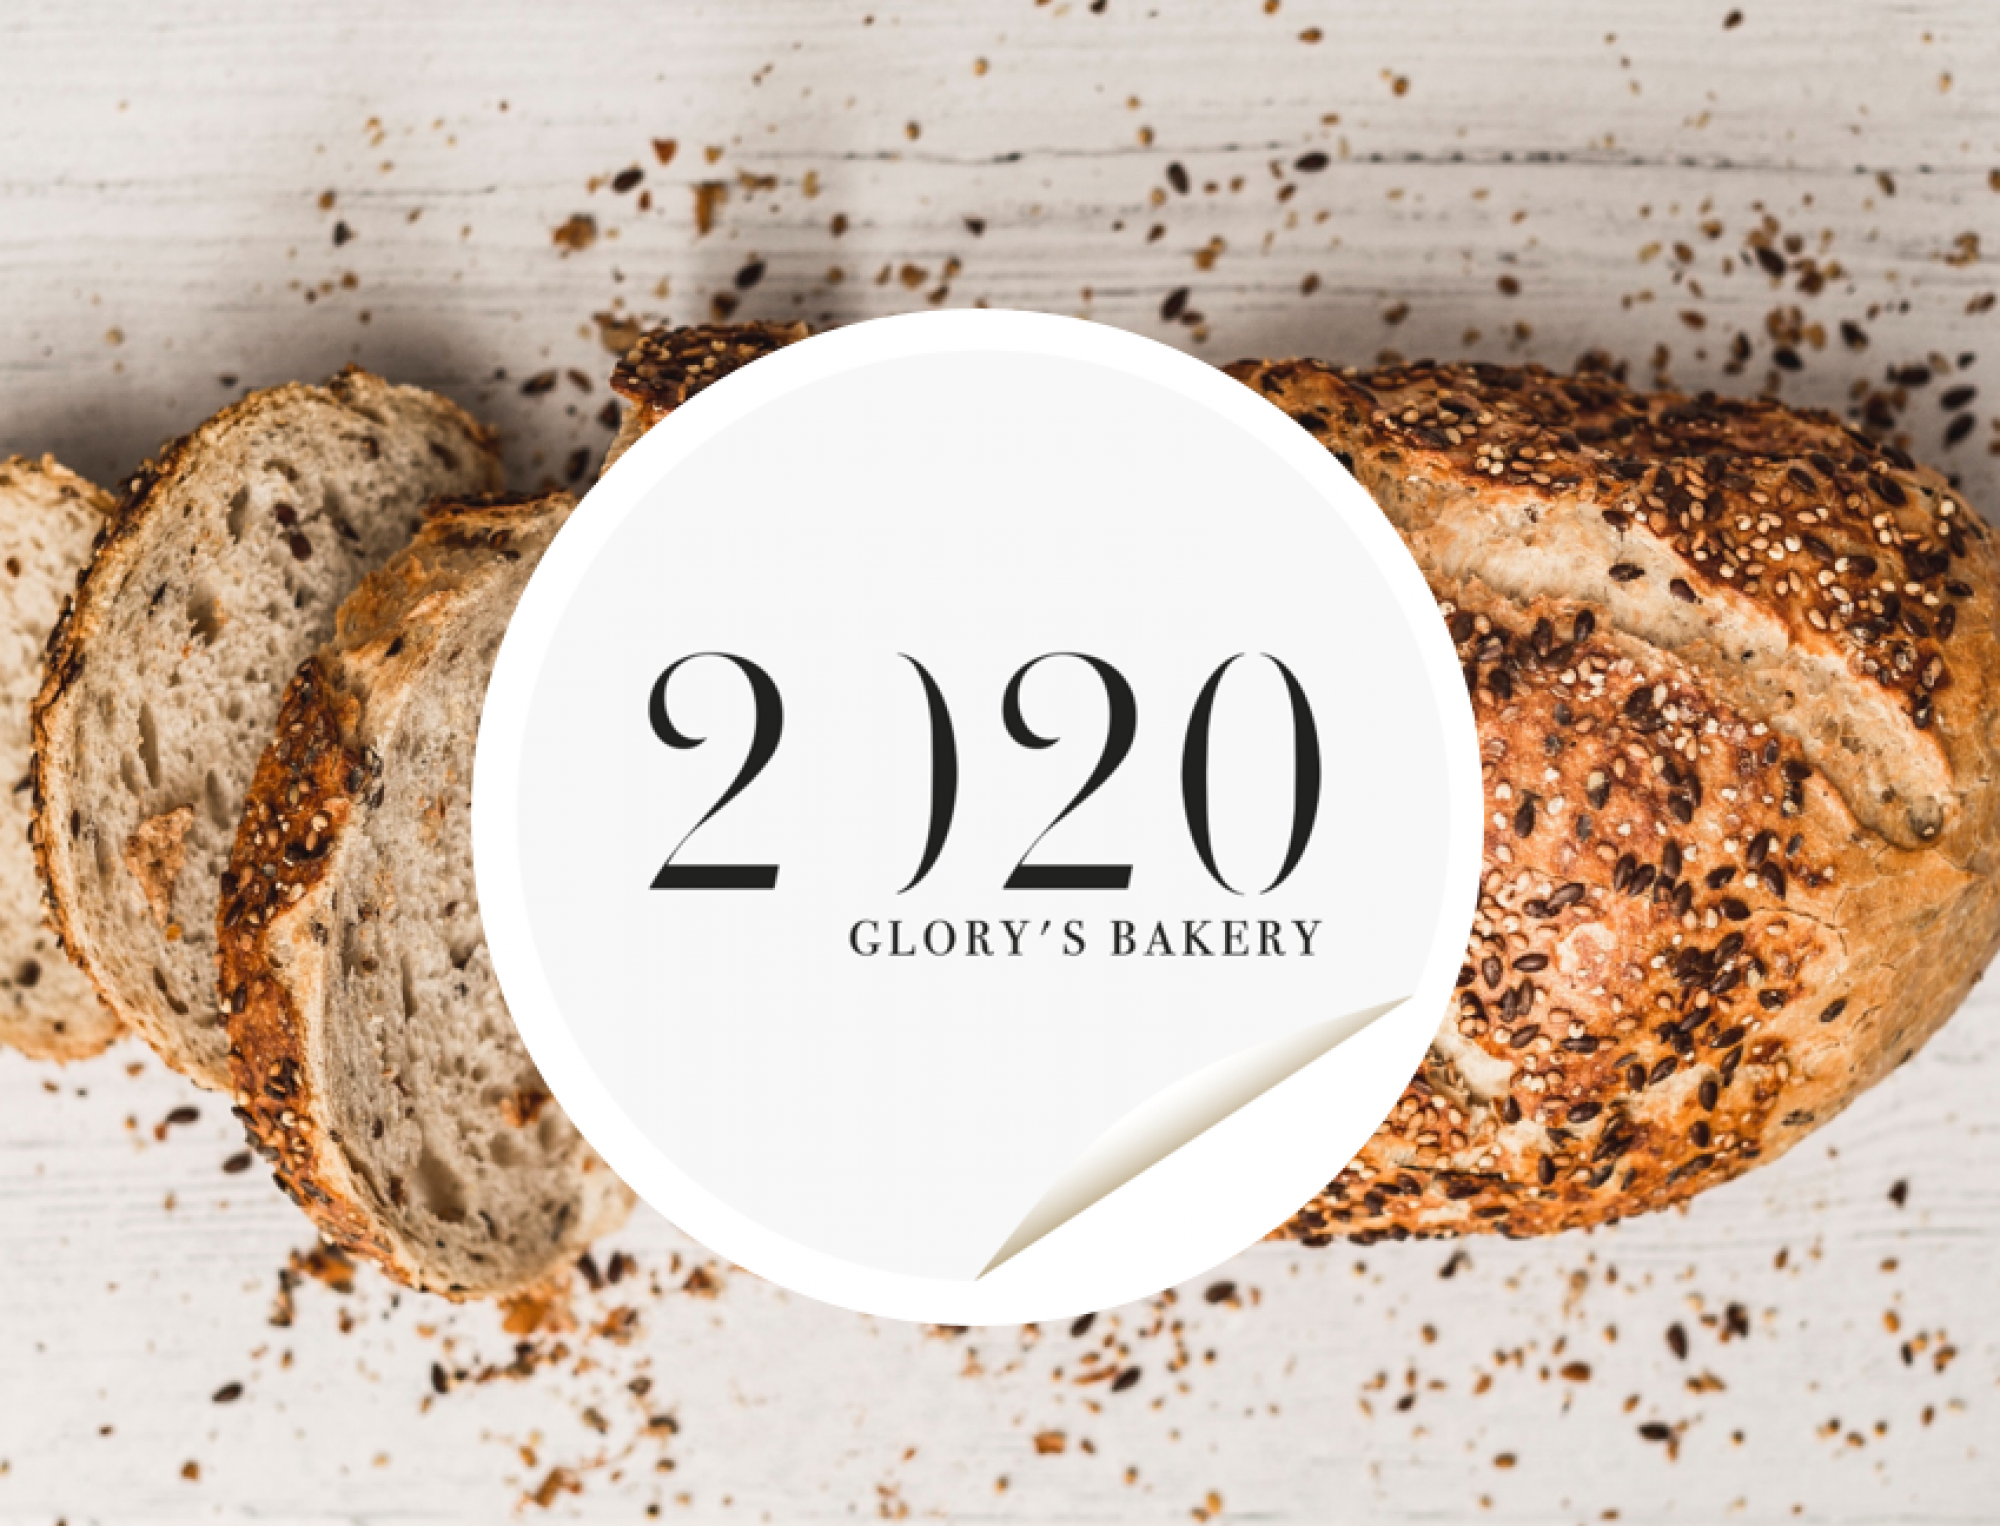 2020 Glory's Bakery